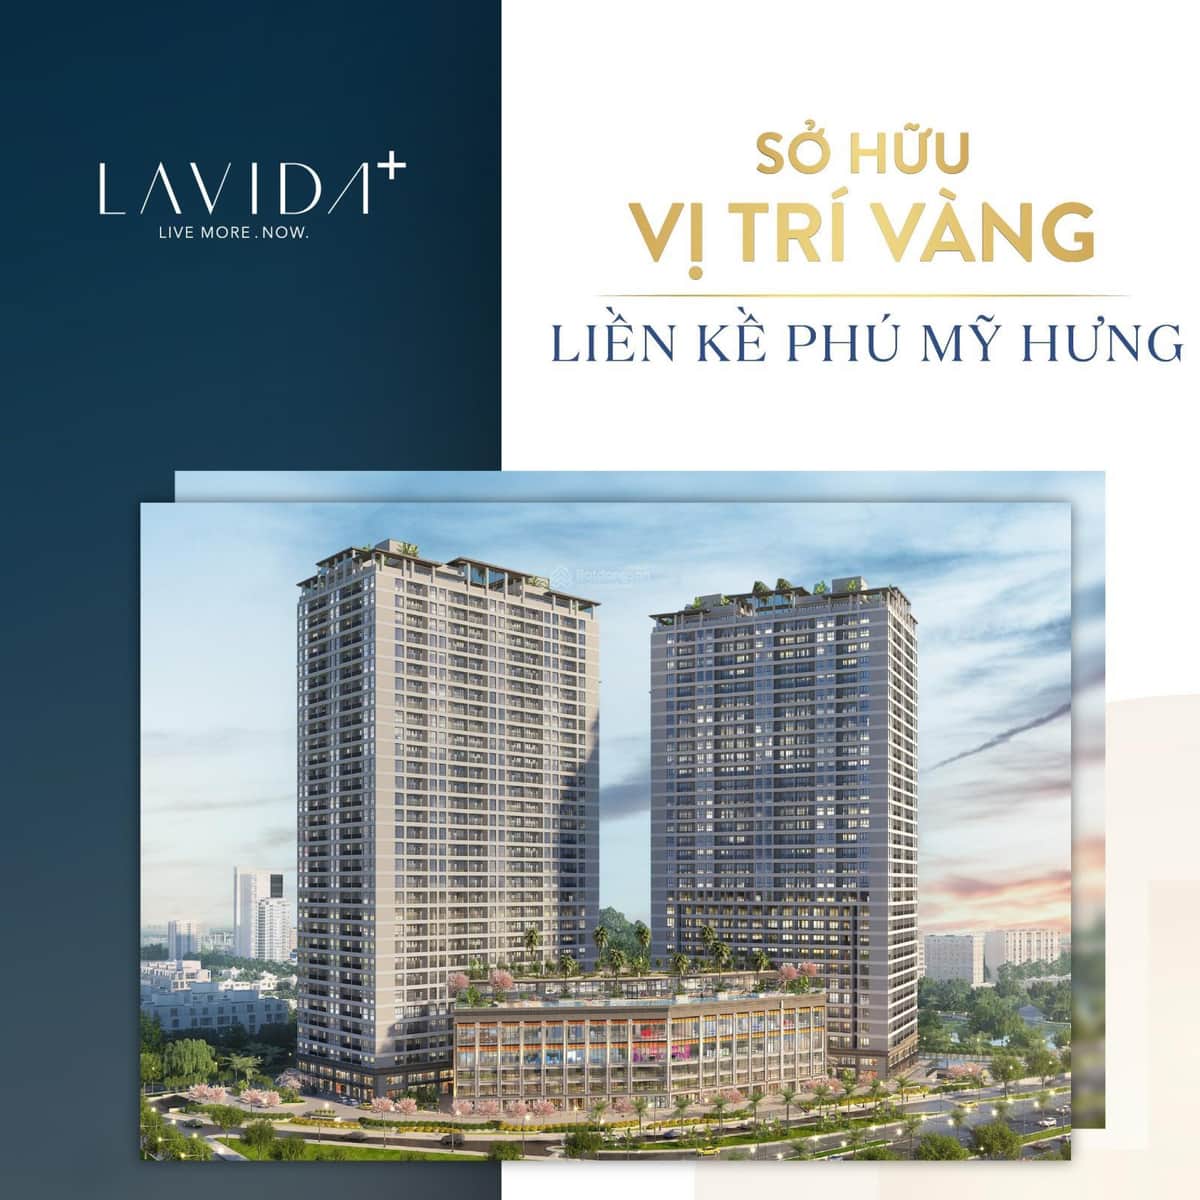 Bán căn hộ 2PN, 75m2, tại ngã tư Nguyễn Văn Linh, Nguyễn Hữu Thọ, quận 7, giá 2.95 tỷ, đã VAT